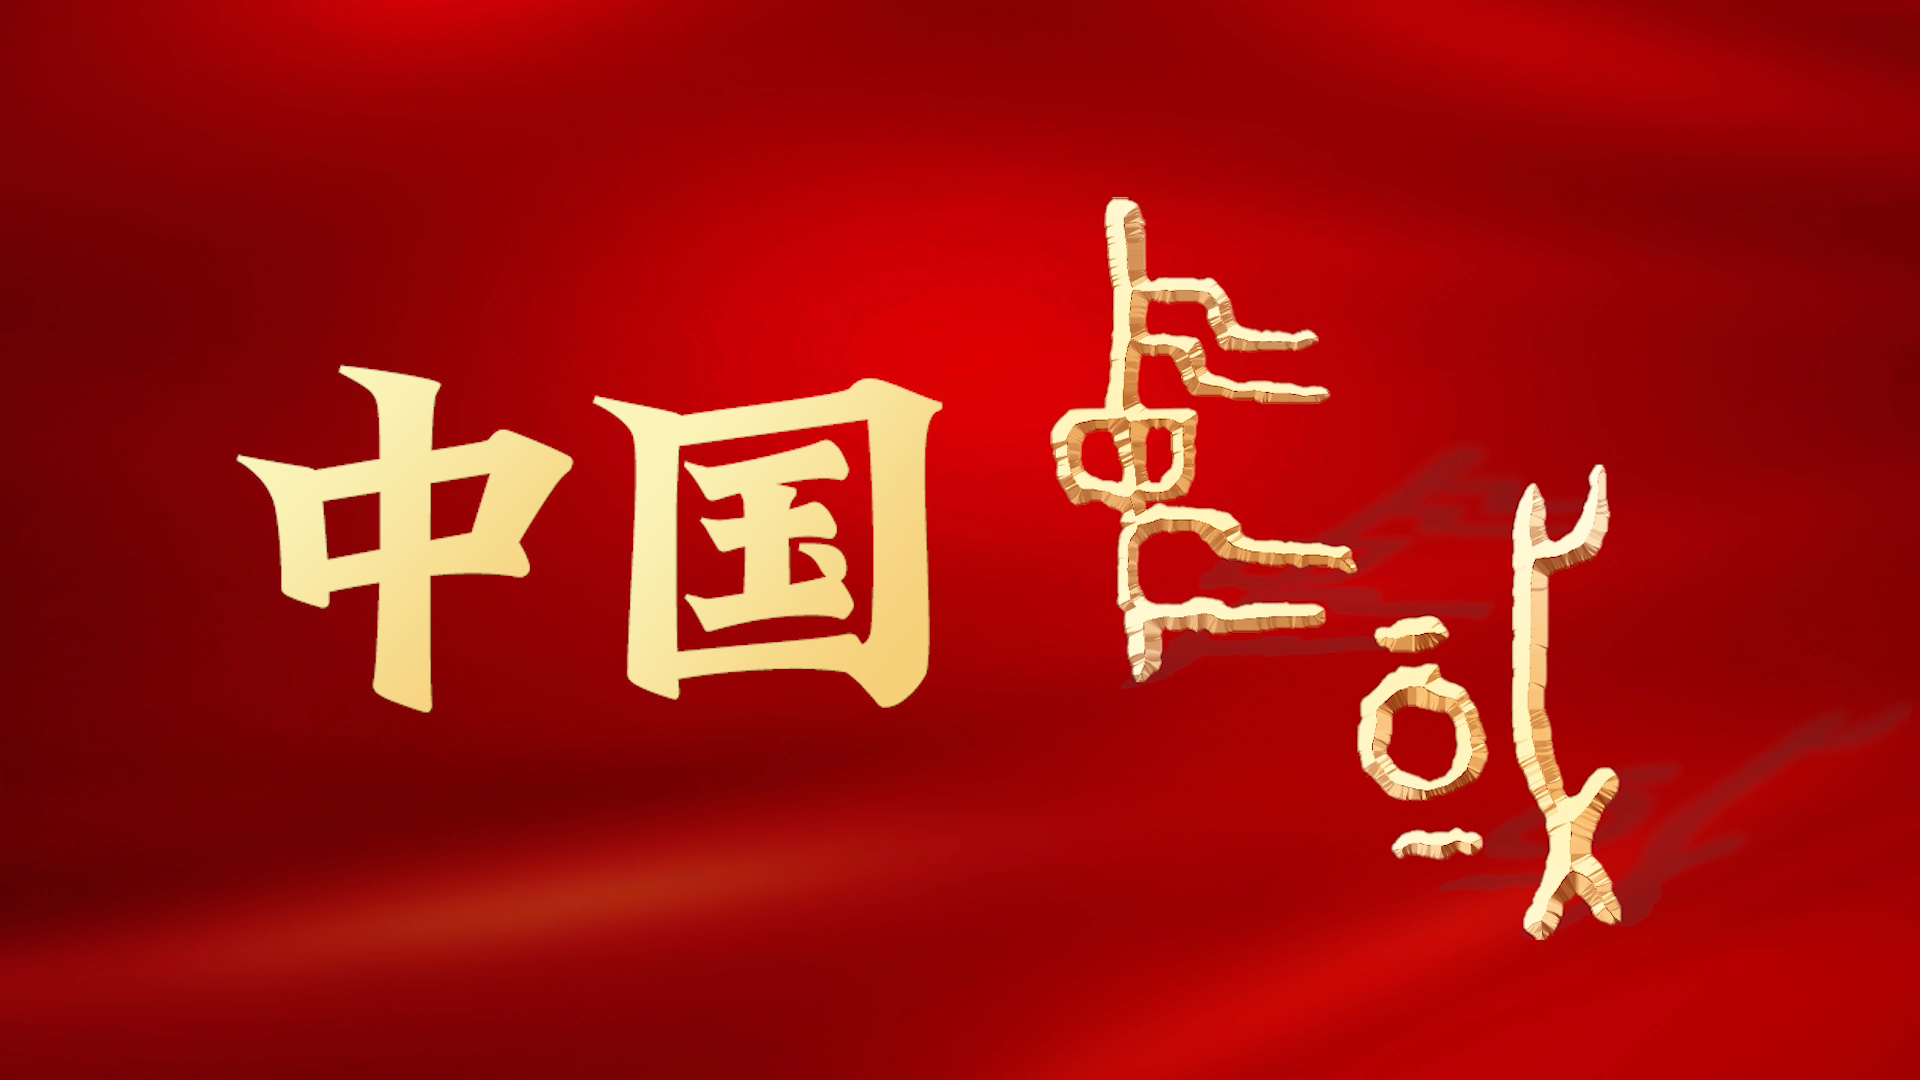 中華文明国際イメージPR動画「CHN」を公開